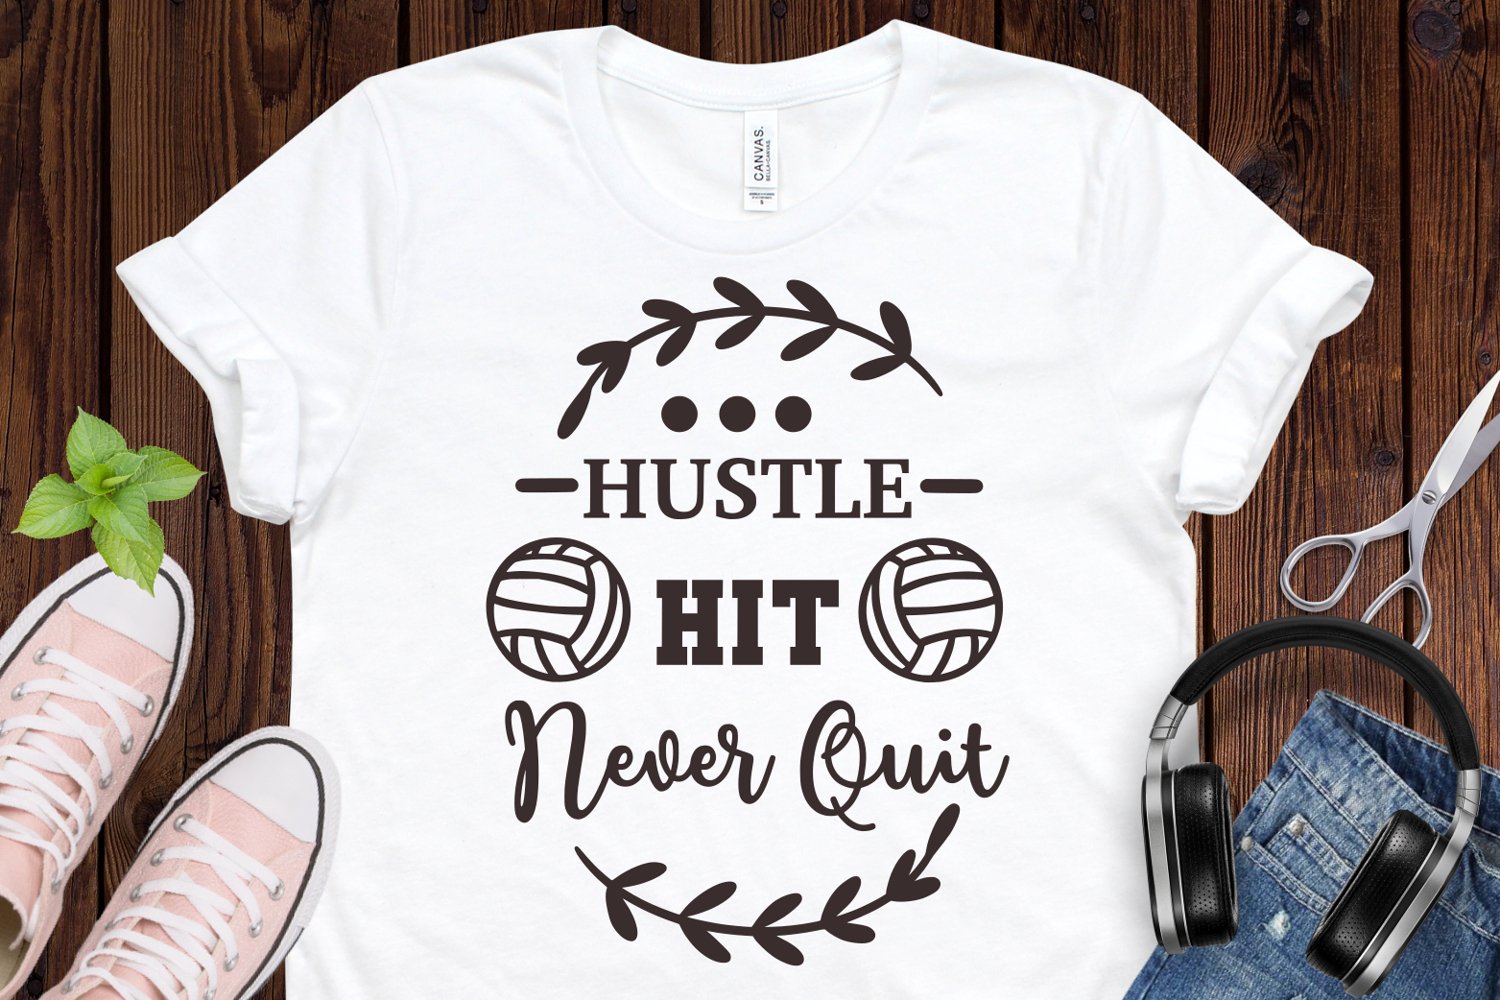 Hustle, hit, never quit - t-shirt design.